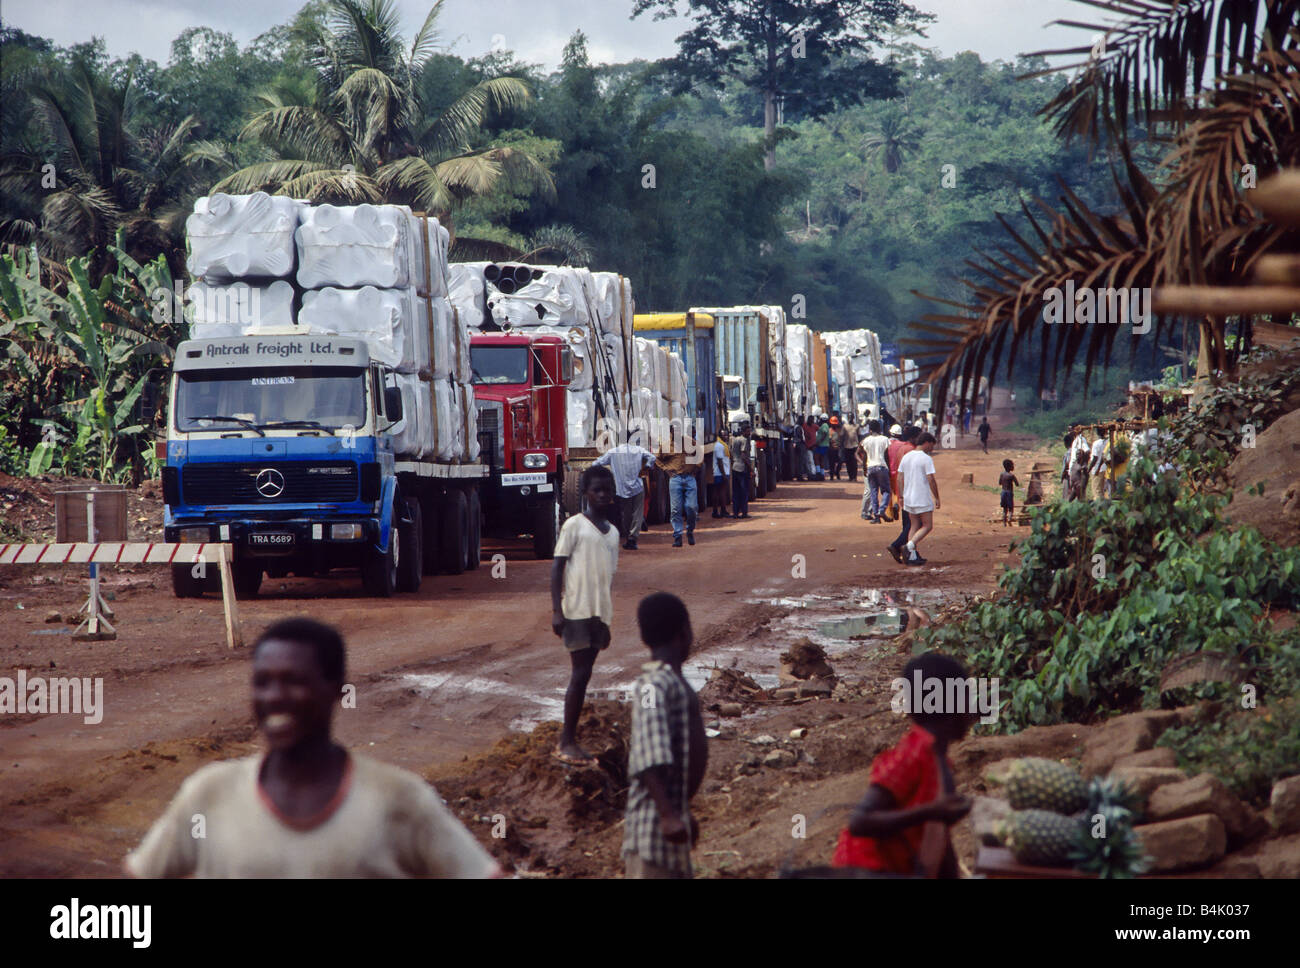 LKW-Konvoi mit Mining Equipment auf dem Weg zur Baustelle an einem Truck-Stop in der Regenwald in Ghana, Westafrika. Stockfoto